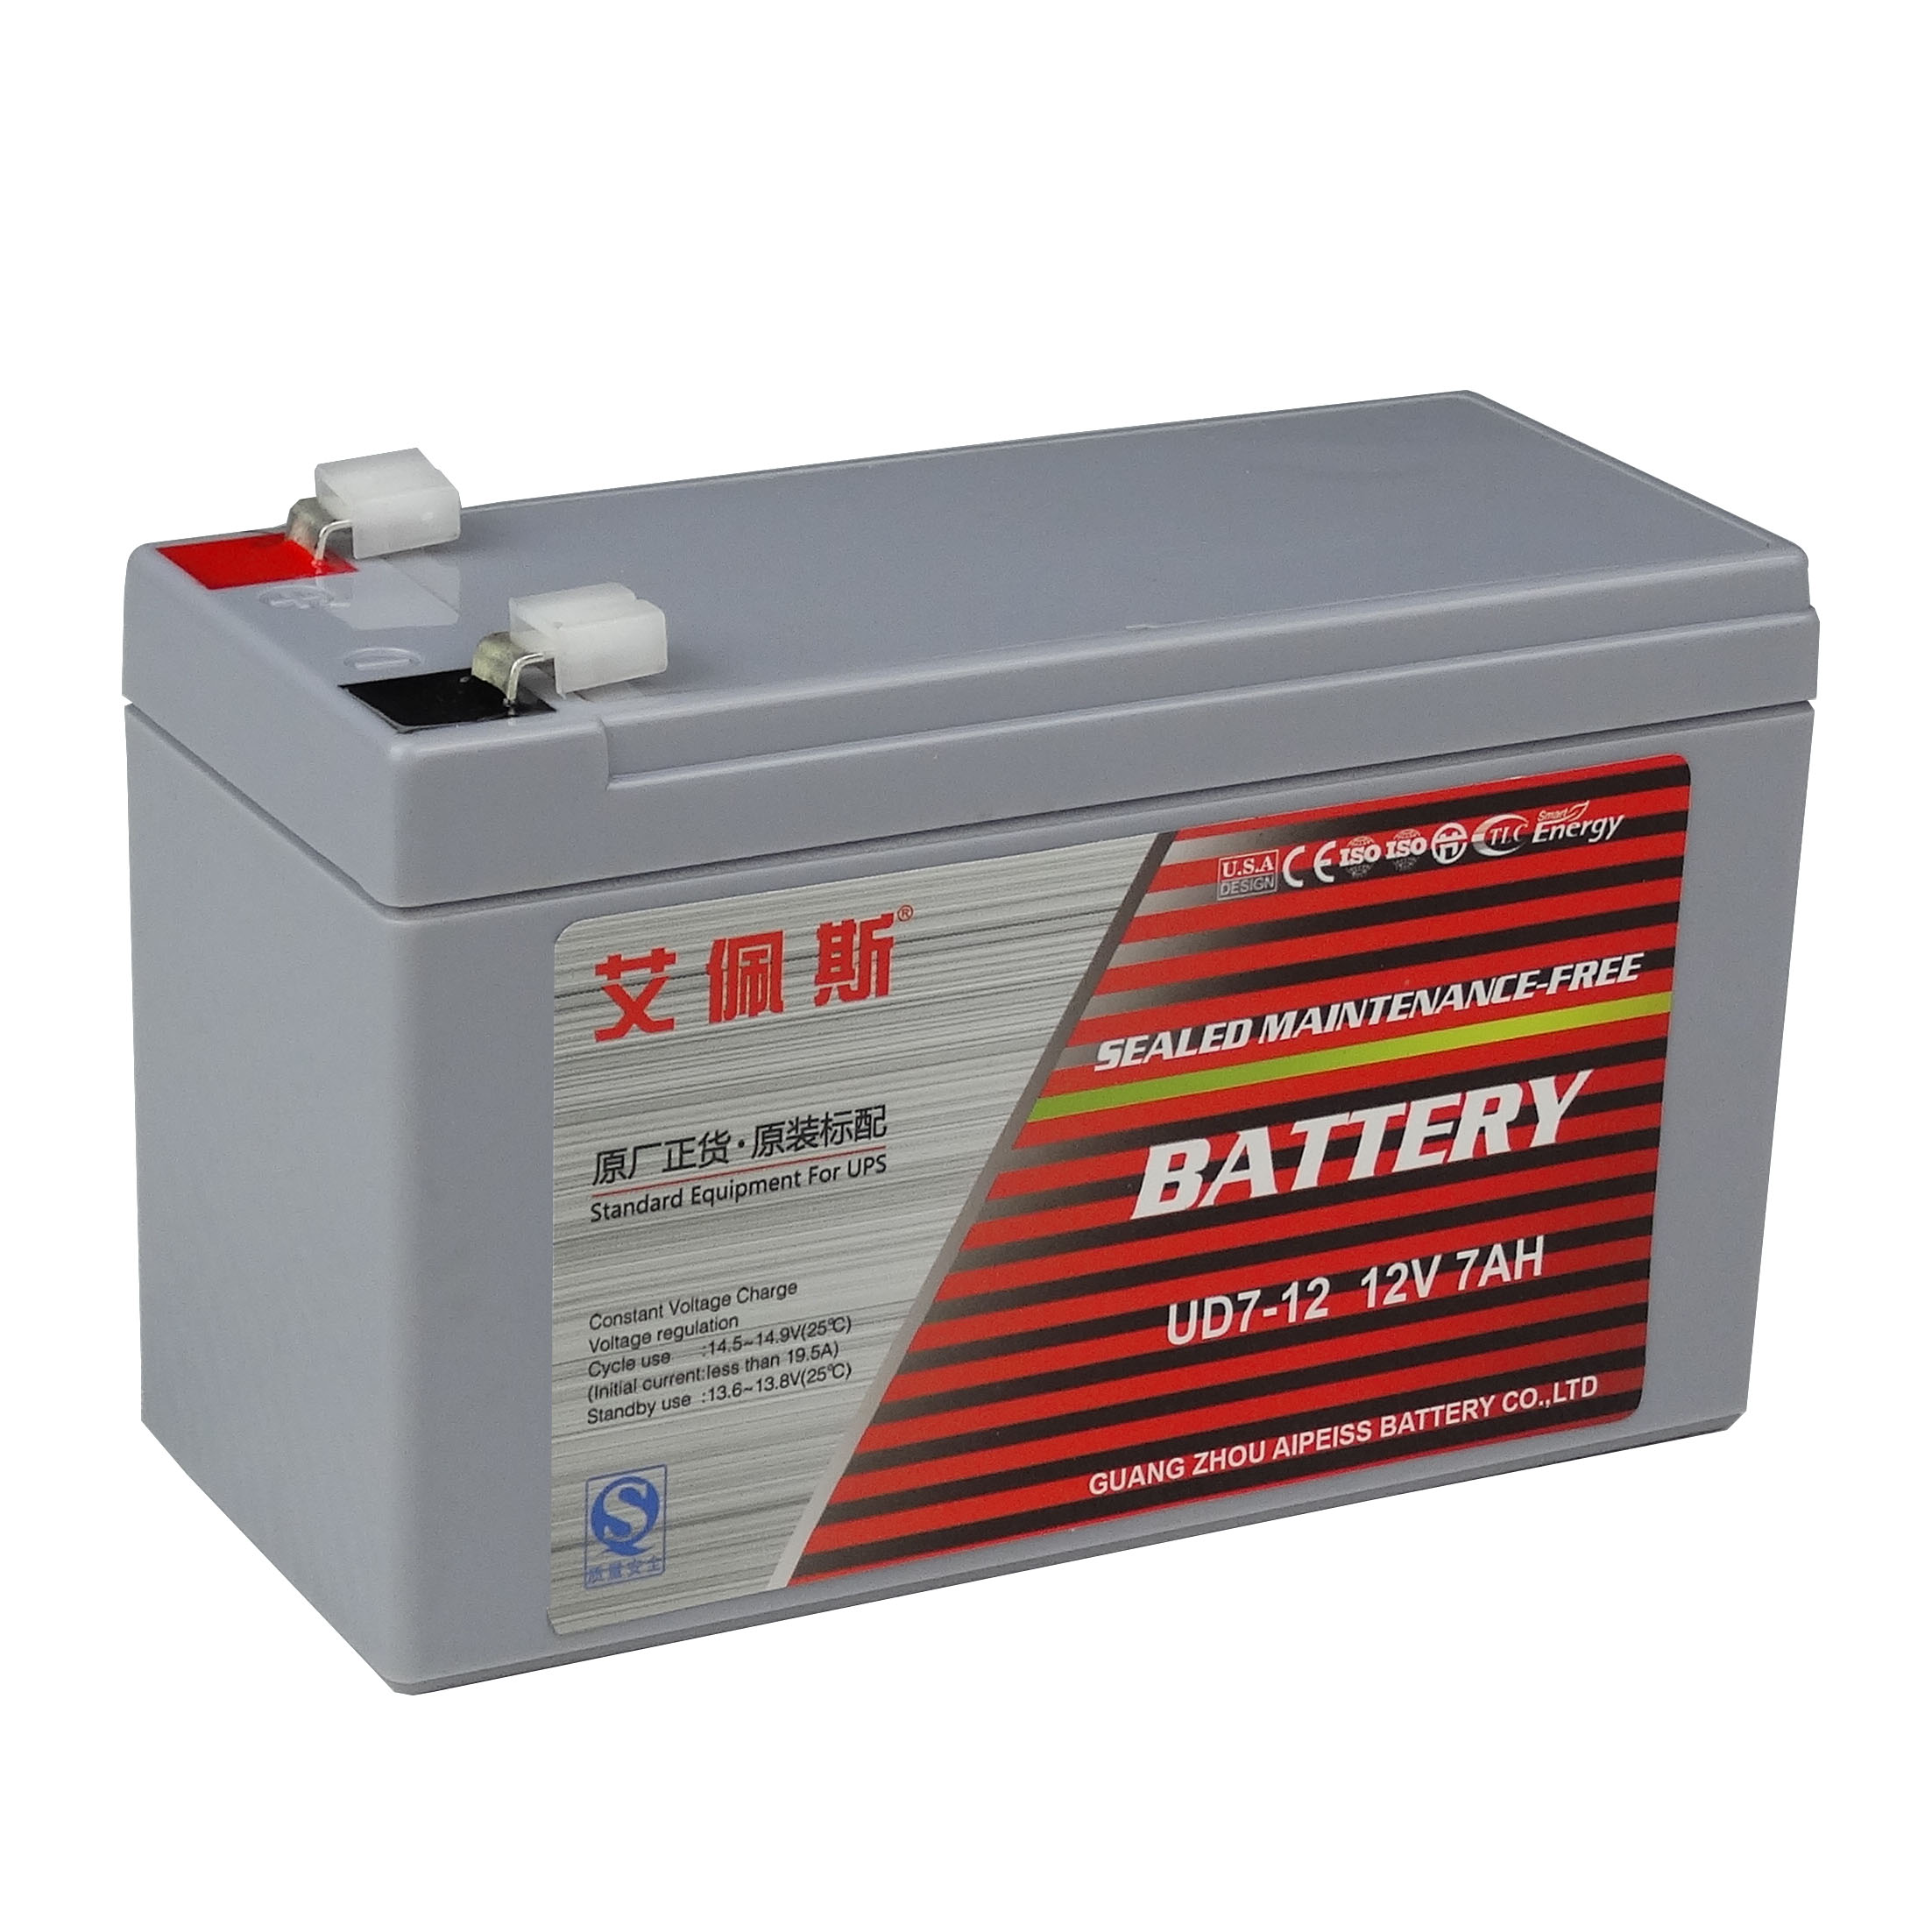 艾佩斯蓄电池UD7-12 艾佩斯蓄电池价格参数